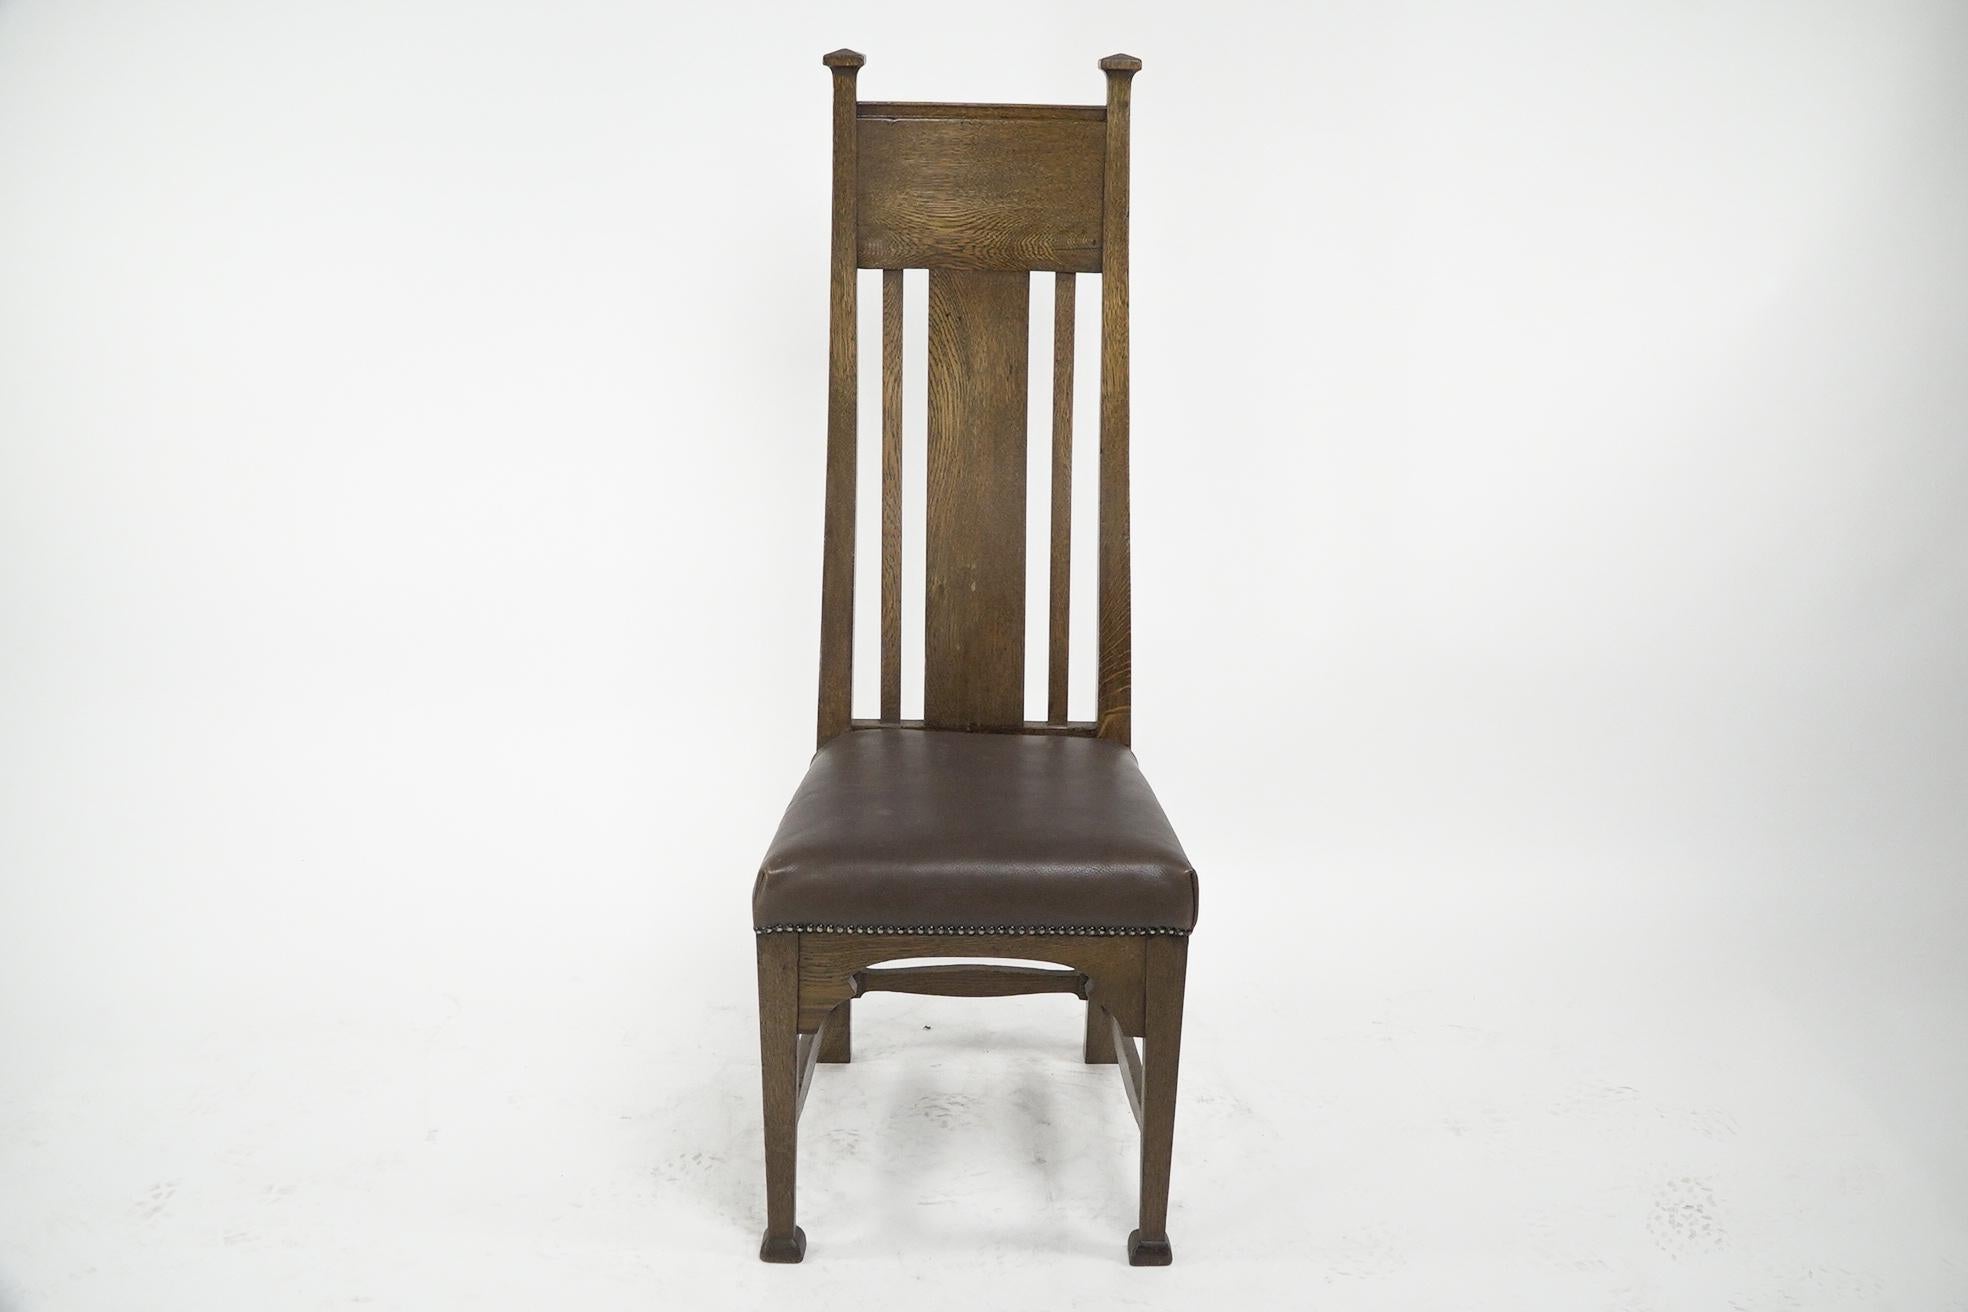 Norman und Stacy zugeschriebener Arts & Crafts-Stuhl aus Eichenholz mit einer serpentinenförmigen Rückenlehne, die ihn sehr bequem macht. Der Sitz hat unten geformte Stützen und ungewöhnliche stilisierte Strecker an den Seiten und der Rückenlehne,